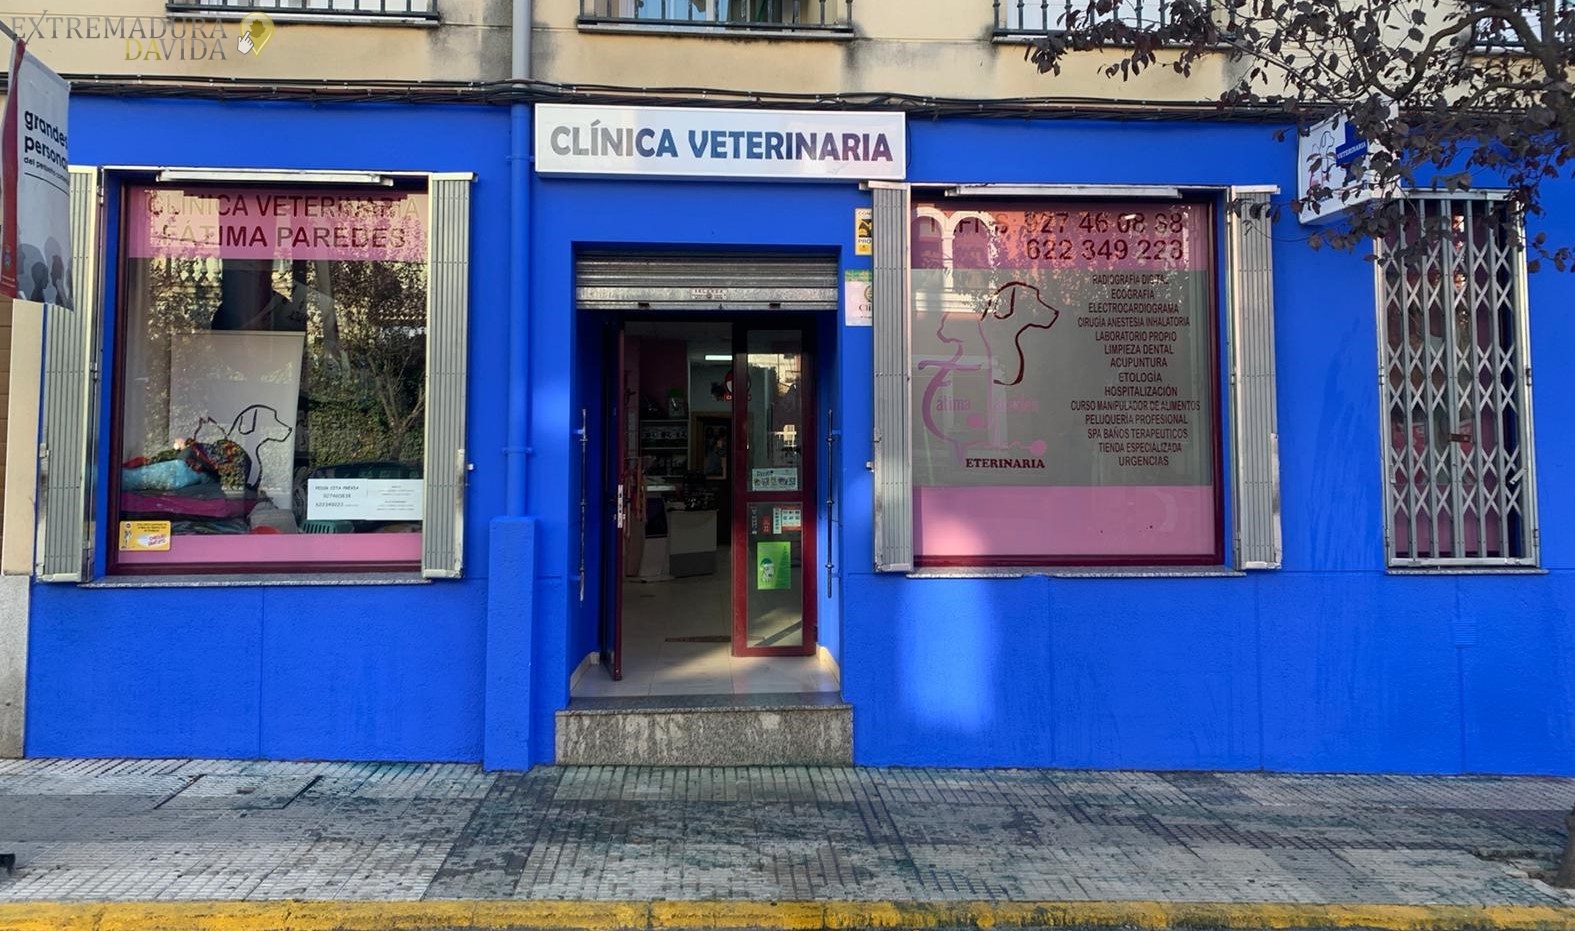 Clinica veterinararía en la Vera Fatima Paredes Jaraiz